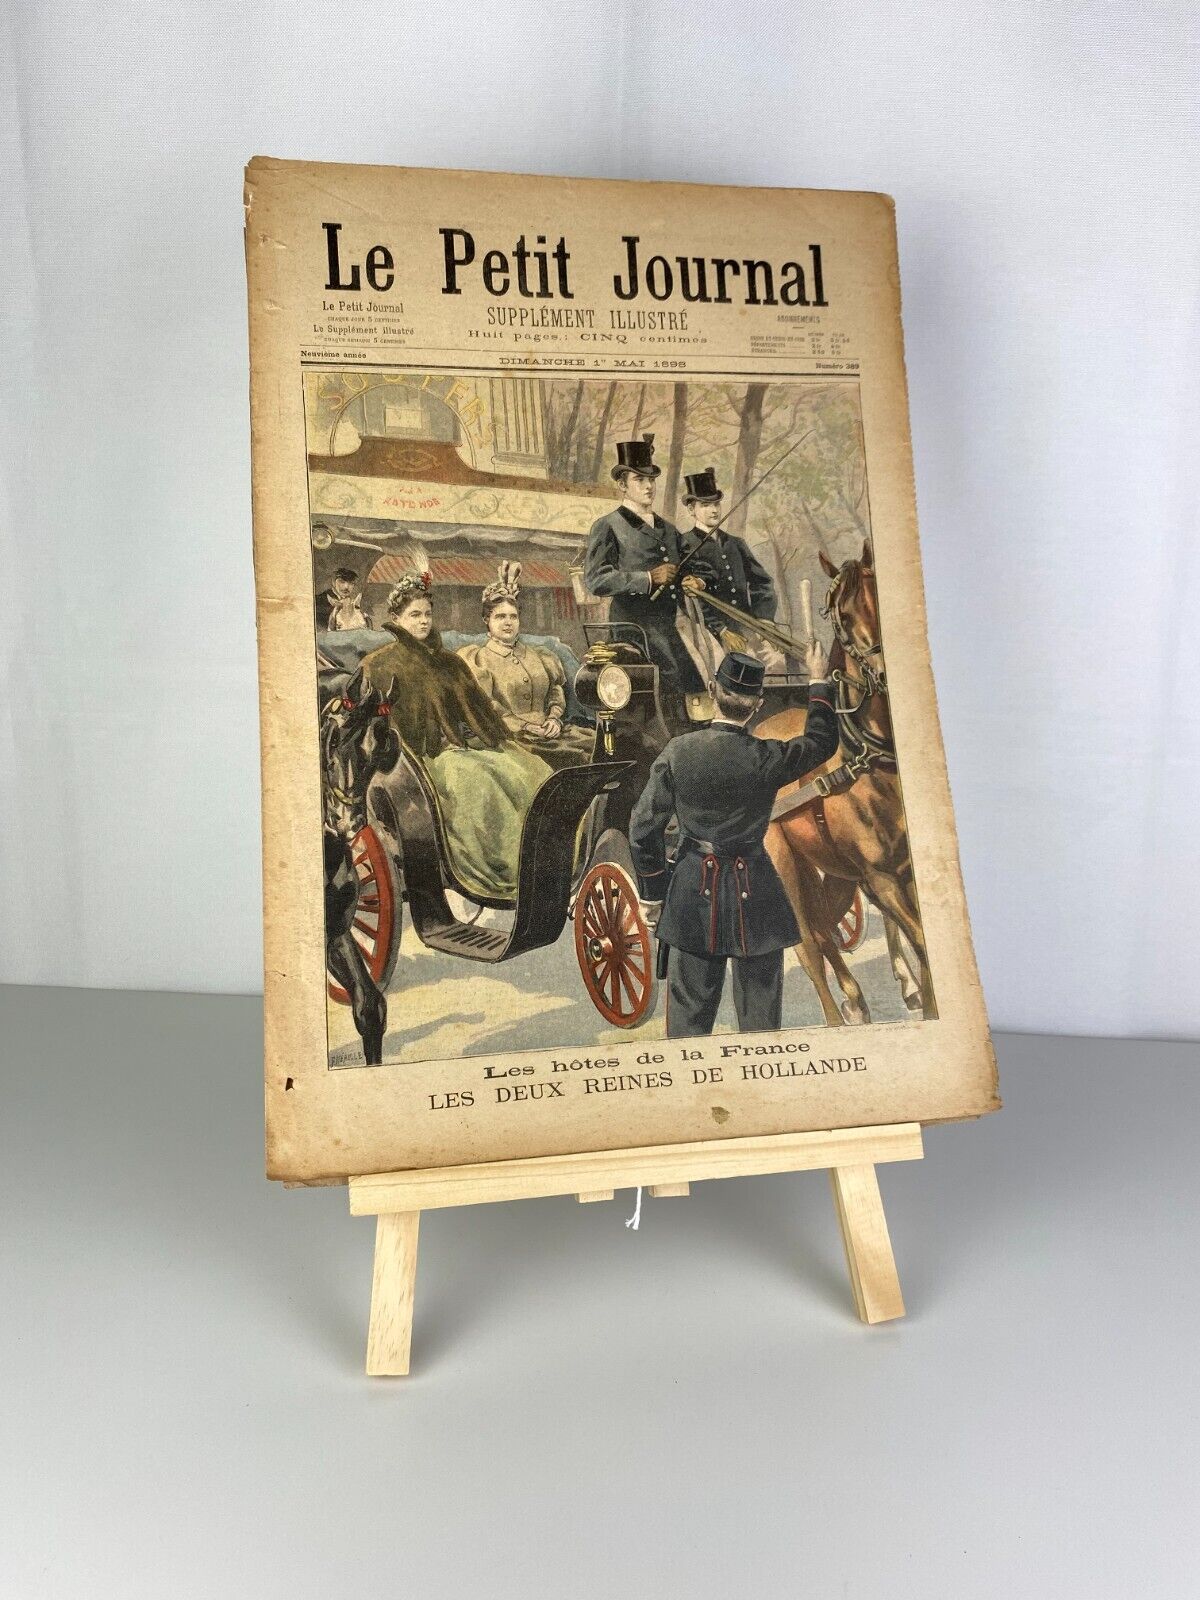 Les hôtes de la France, 1 May 1898 N°389, Le Petit Journal 